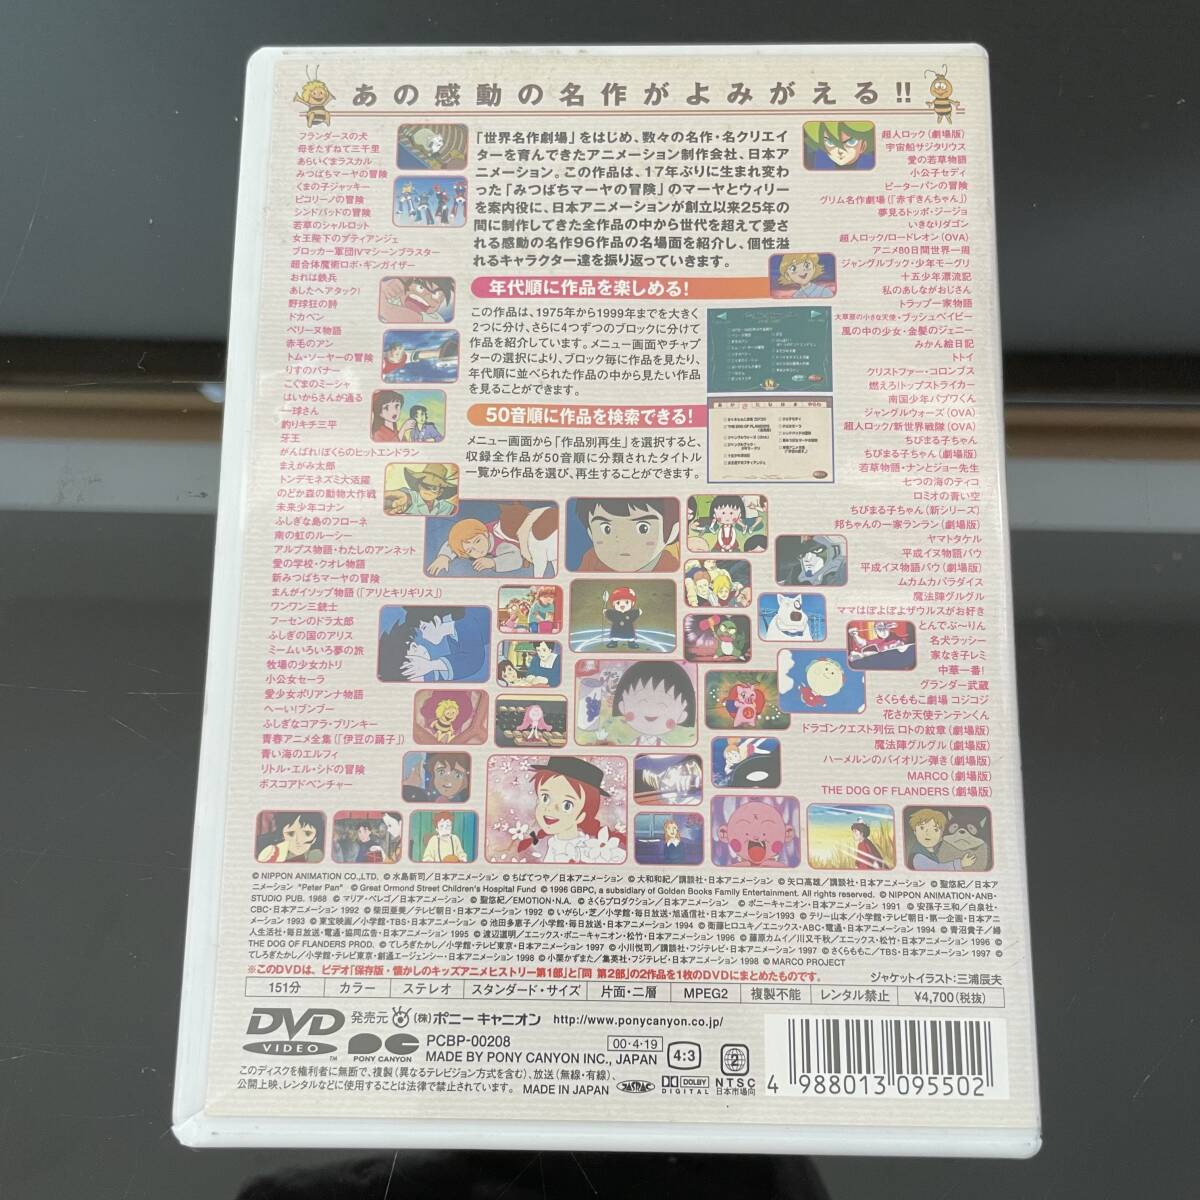 【DVD】ザ・ヒストリーオブニッポンアニメーション 世界の名作劇場〜ちびまる子ちゃんまでの画像4